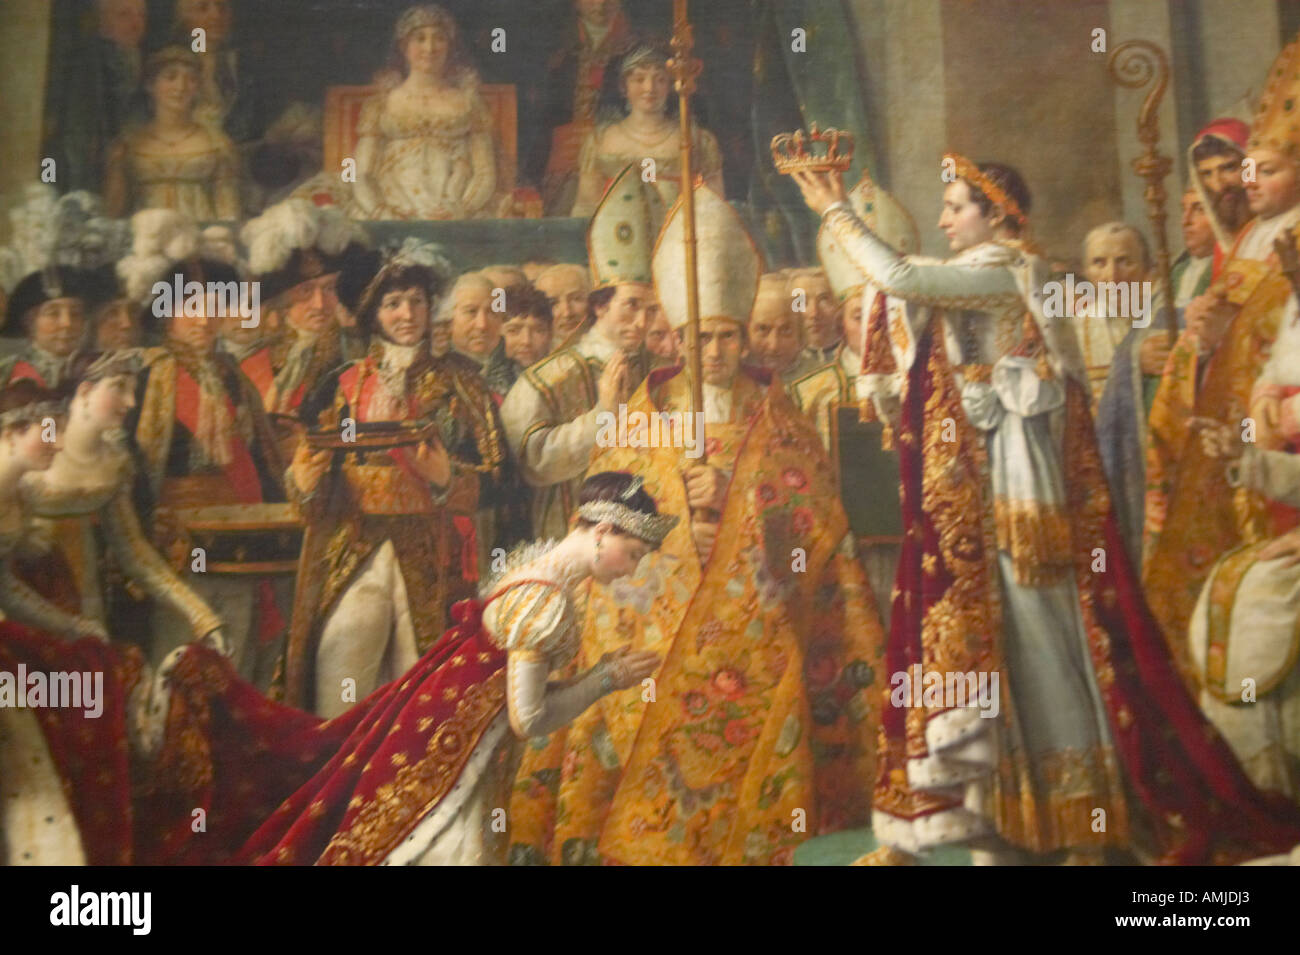 Le Sacre de Napoléon par Jacques Louis David 1808 au Musée du Louvre Paris France Huile sur toile Banque D'Images